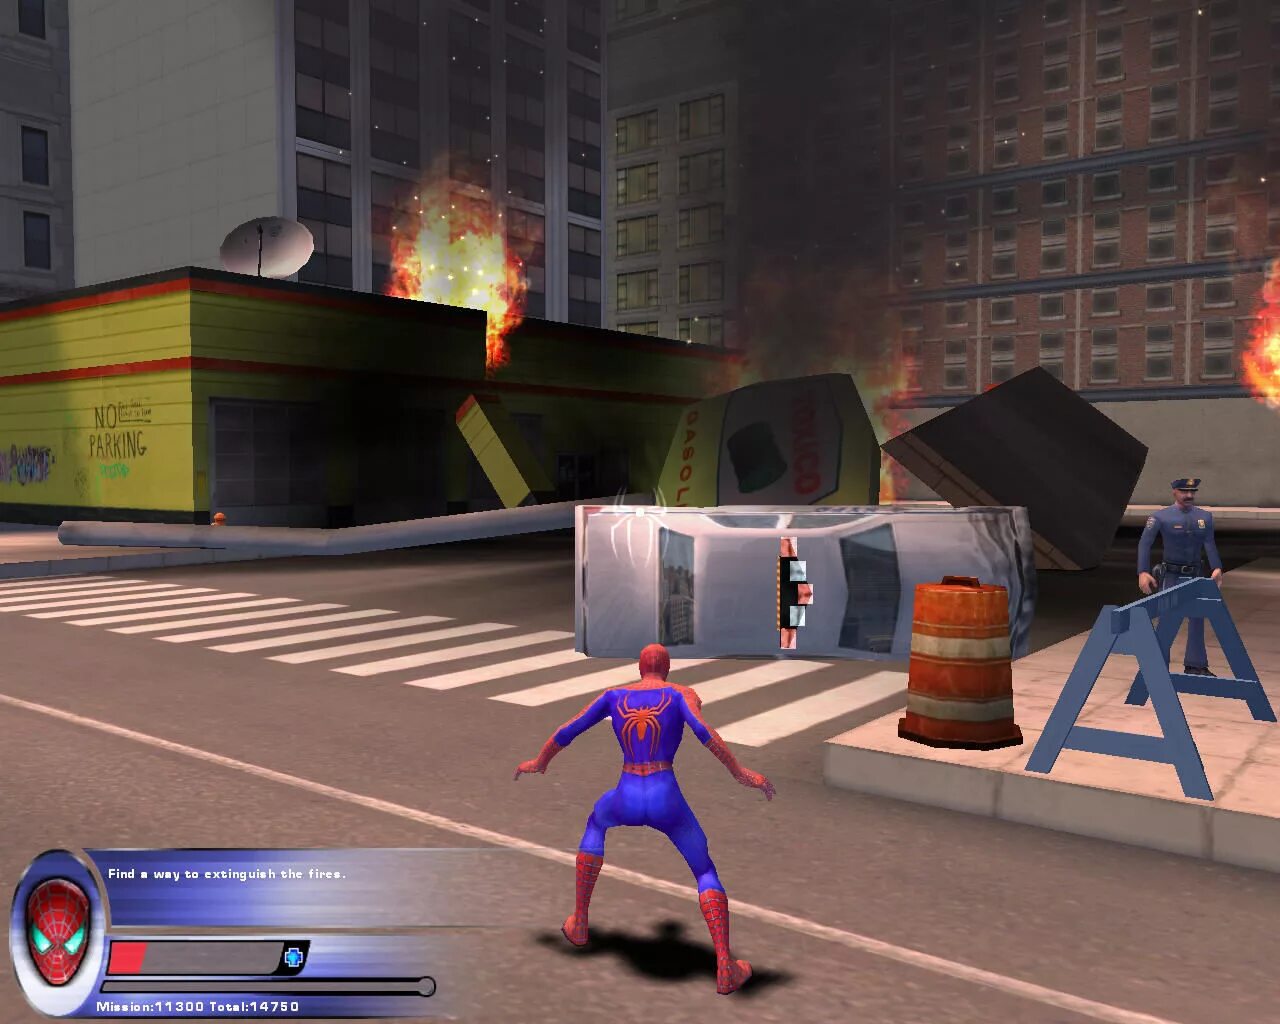 Компьютерная игра человек паук. Spider-man 2 (игра, 2004). Спайдер Мэн игра. Человек паук игра 2004. Спайдермен 2 игра.